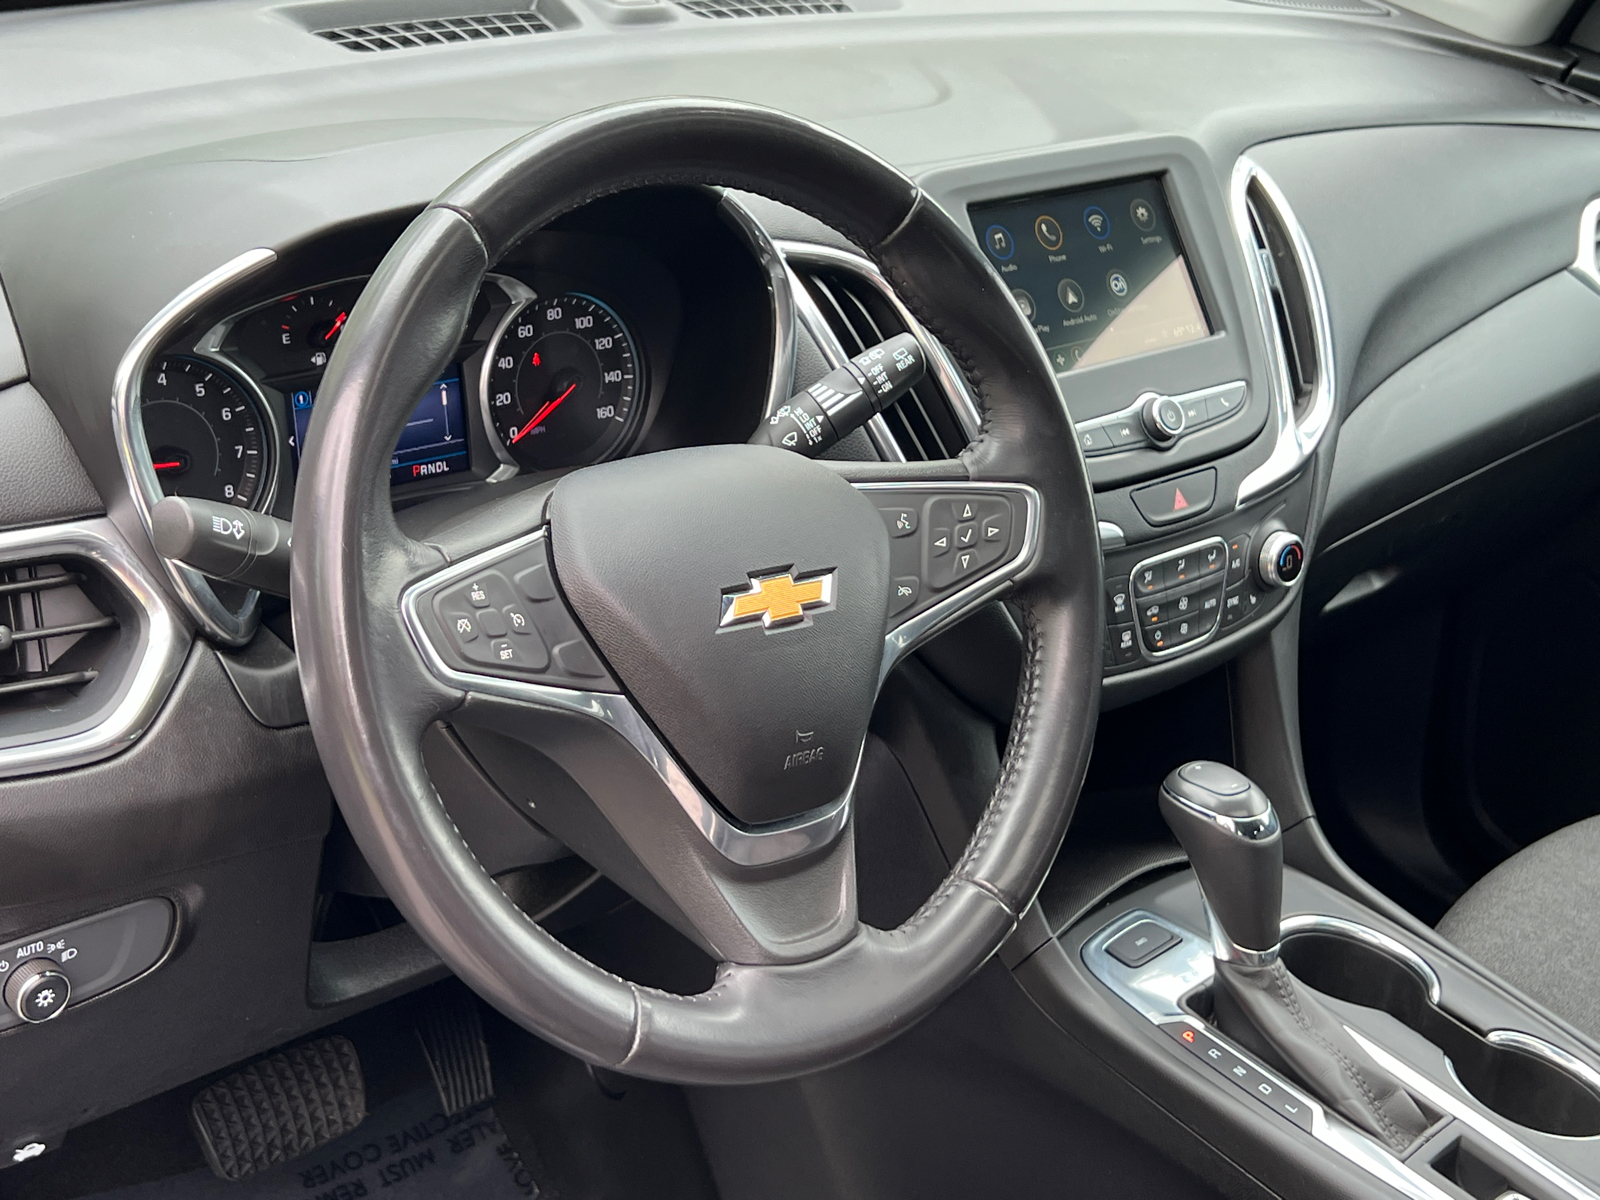 2019 Chevrolet Equinox LT 21